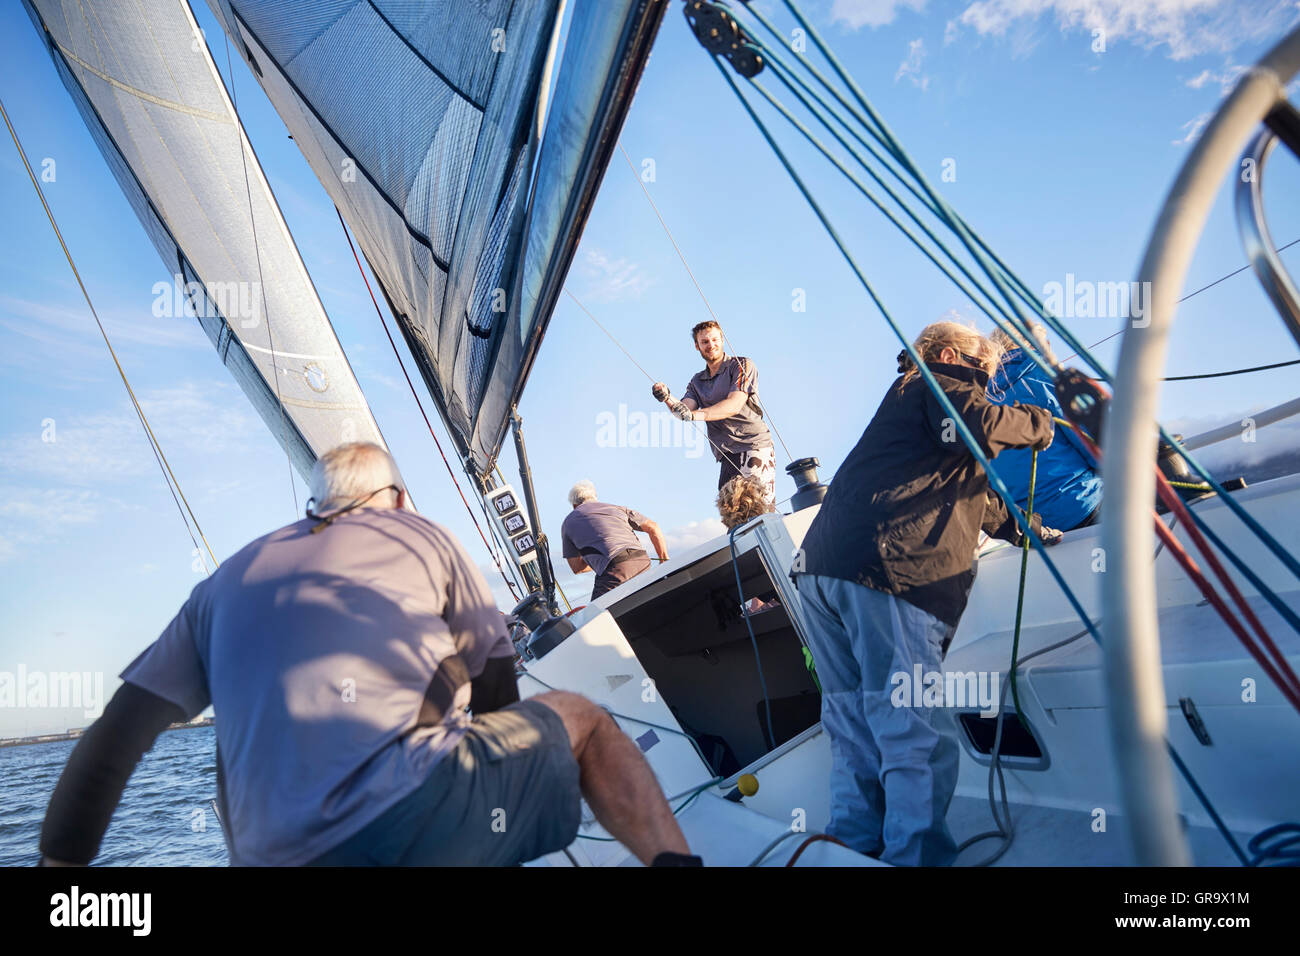 Men sailing adjusting rigging and sail on sailboat Stock Photo